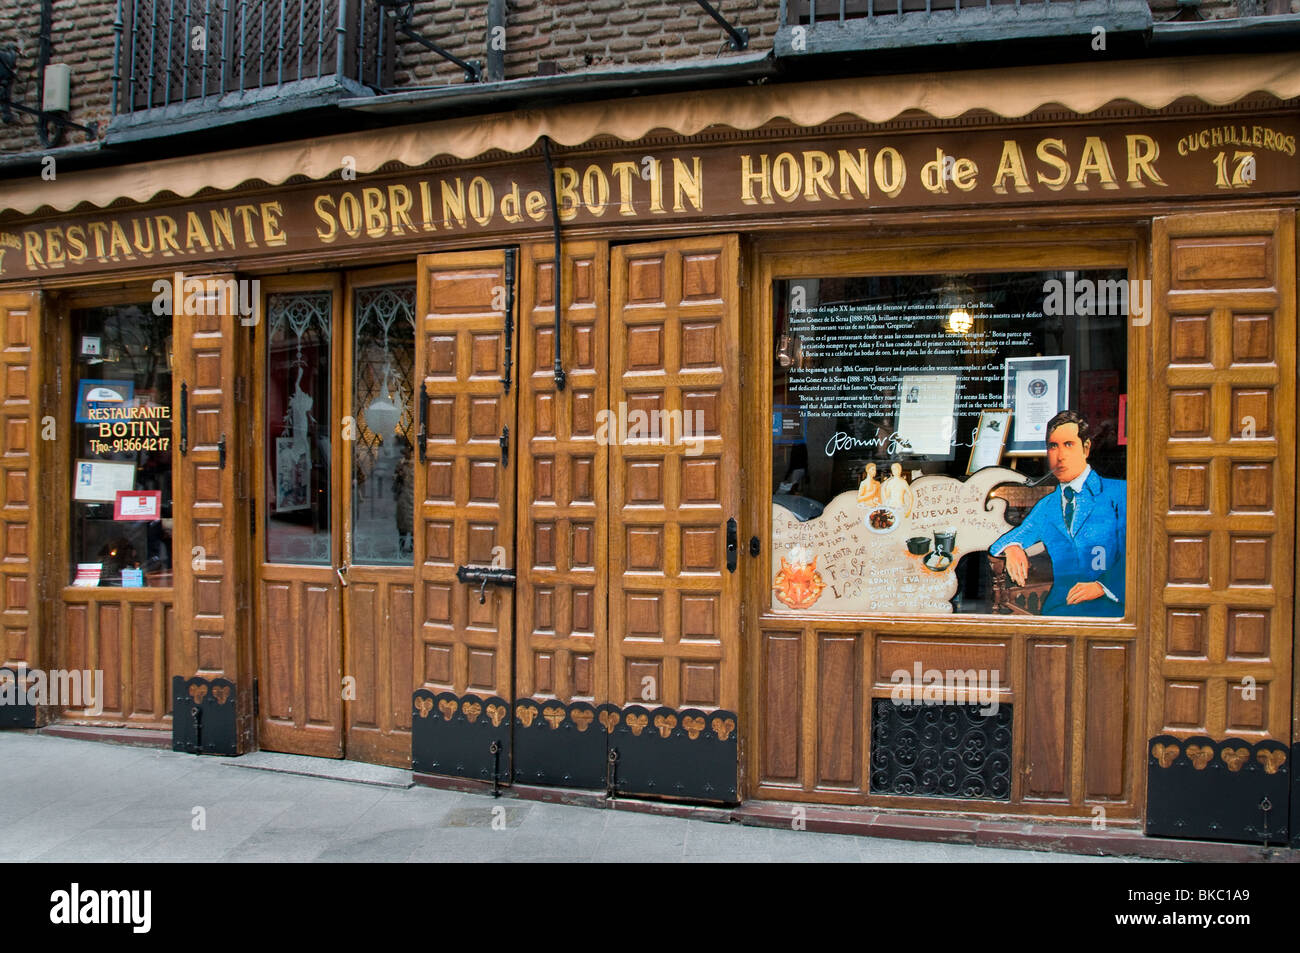 Sobrino de Botin Horno de Asar Old Madrid Spain Bar Pub Cafe  Restaurant Stock Photo